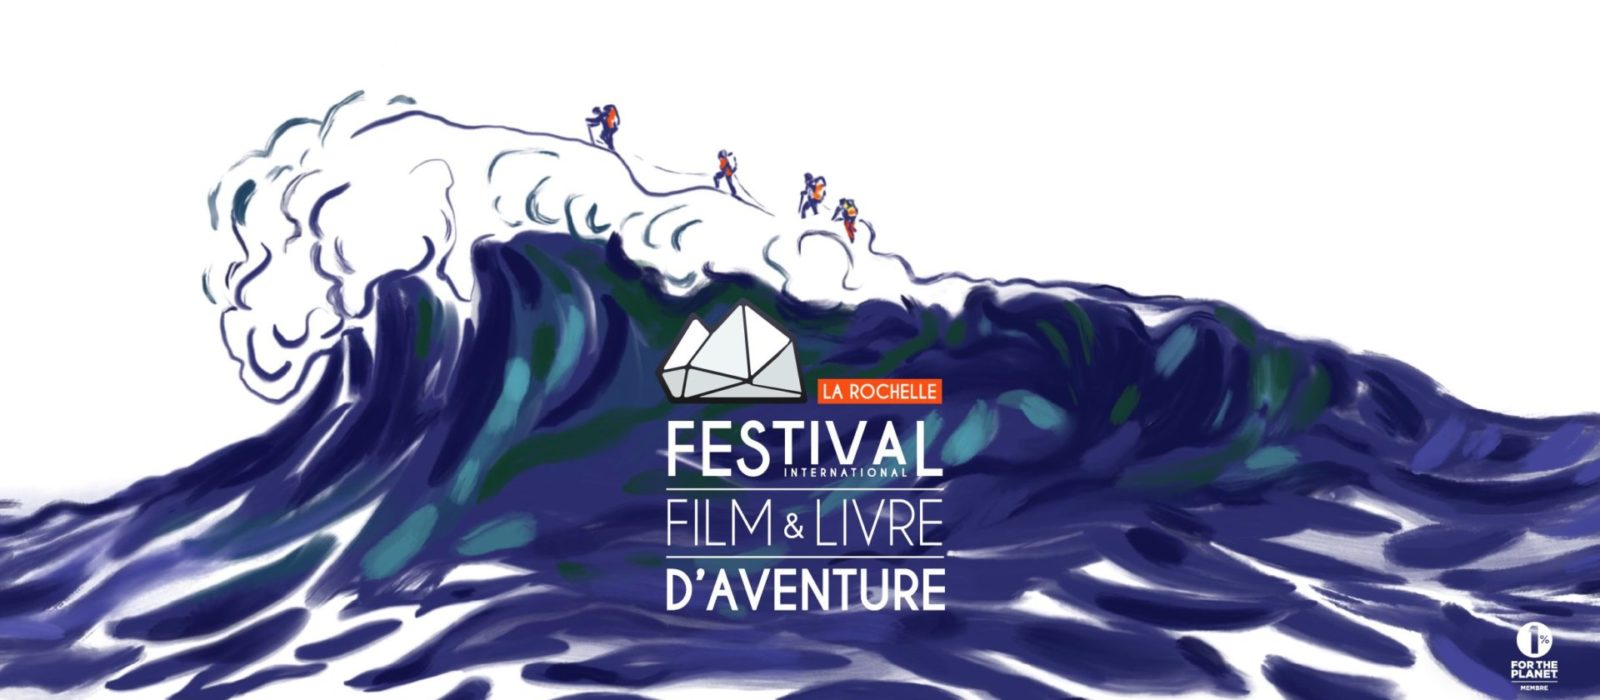 Vélo auFestival international du film et du livred'aventure de La Rochelle